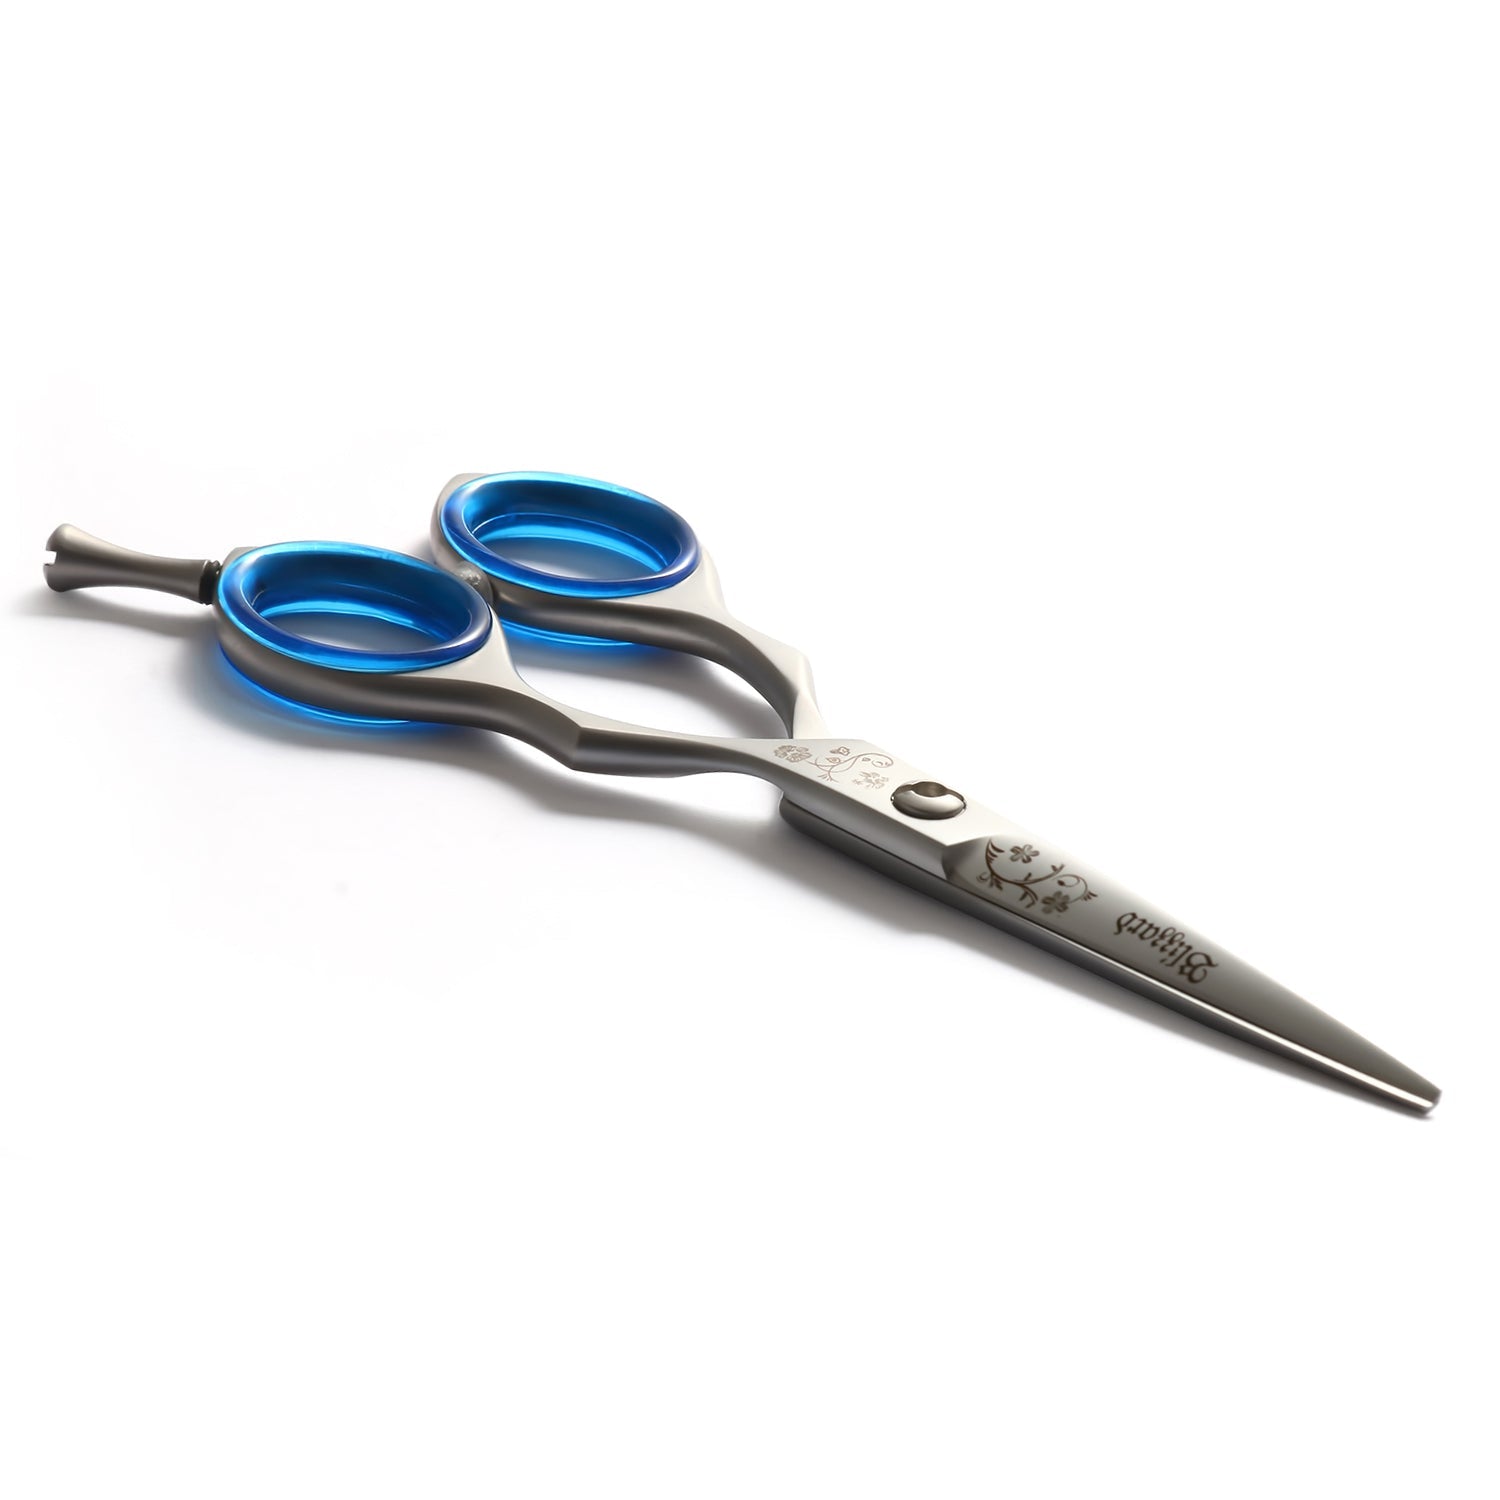 Blizzard® Hairdressing Scissors Vg-10 Cobalt 14Cm | Matt Finish Hair